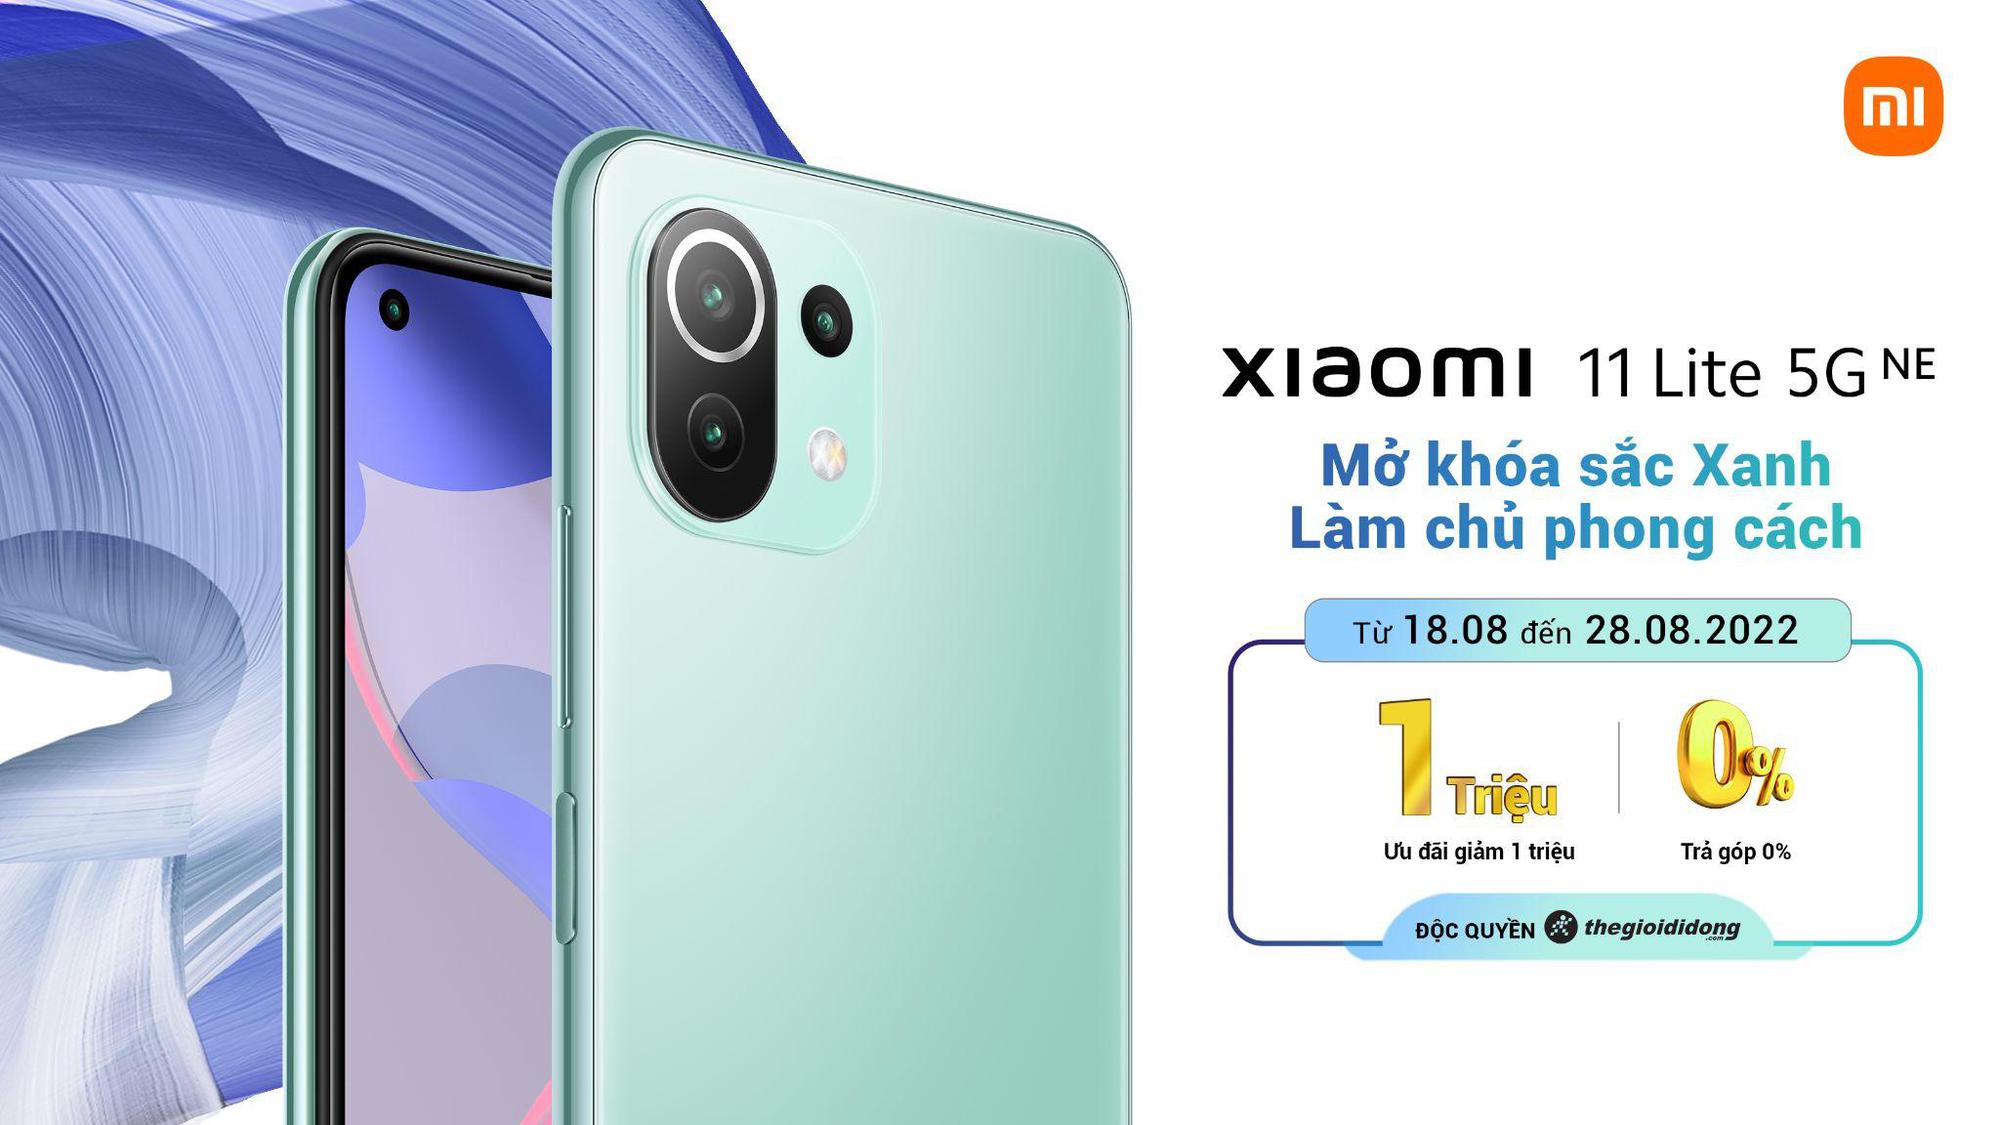 Xiaomi 11 Lite 5G NE ra mắt phiên bản màu đặc biệt mới Xanh Bạc Hà tại Thế Giới Di Động, cùng nhiều ưu đãi hấp dẫn - ảnh 1